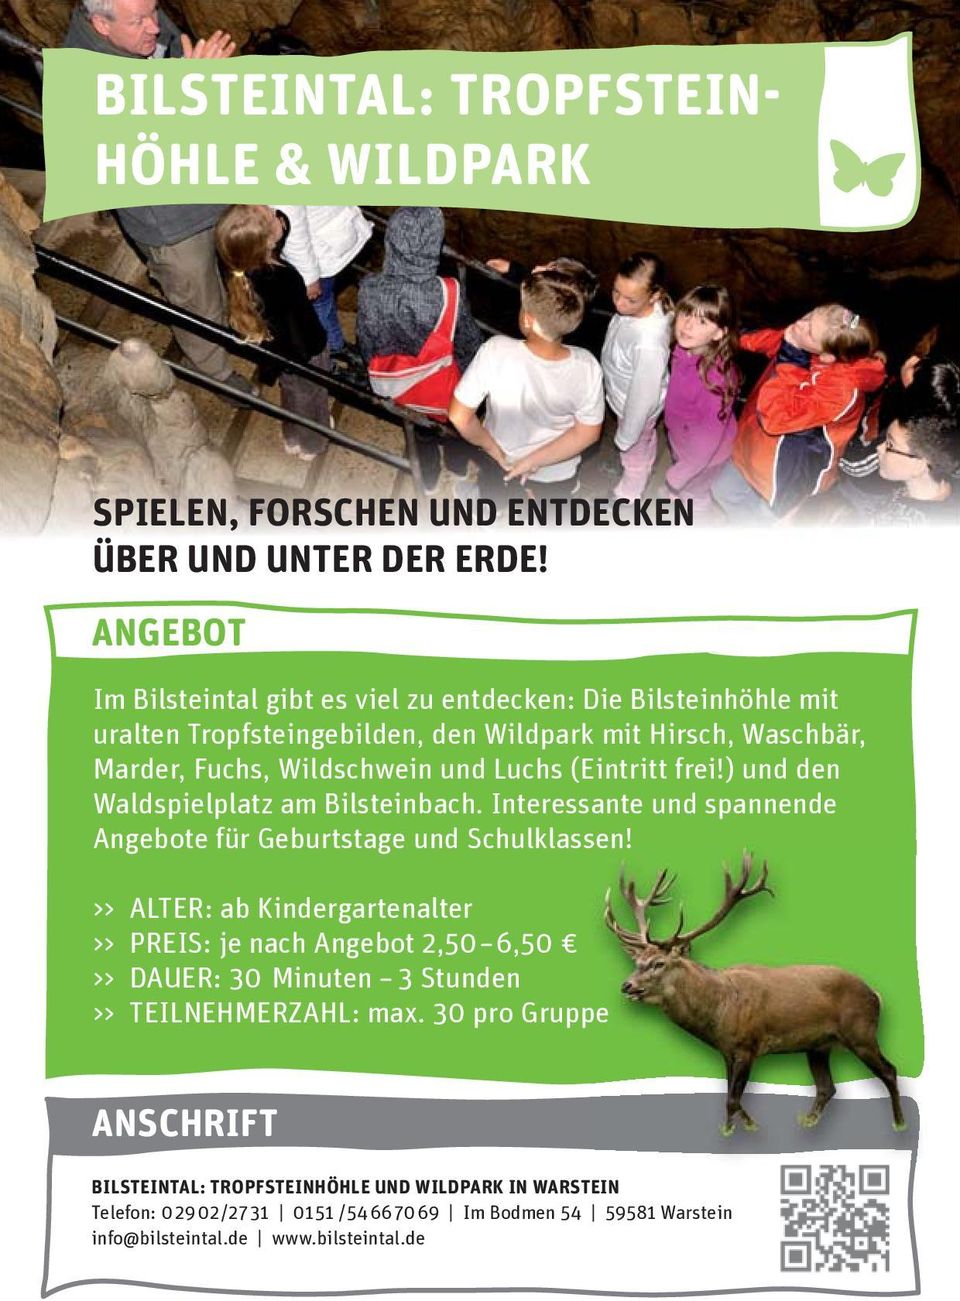 (Eintritt frei!) und den Waldspielplatz am Bilsteinbach. Interessante und spannende Angebote für Geburtstage und Schulklassen!